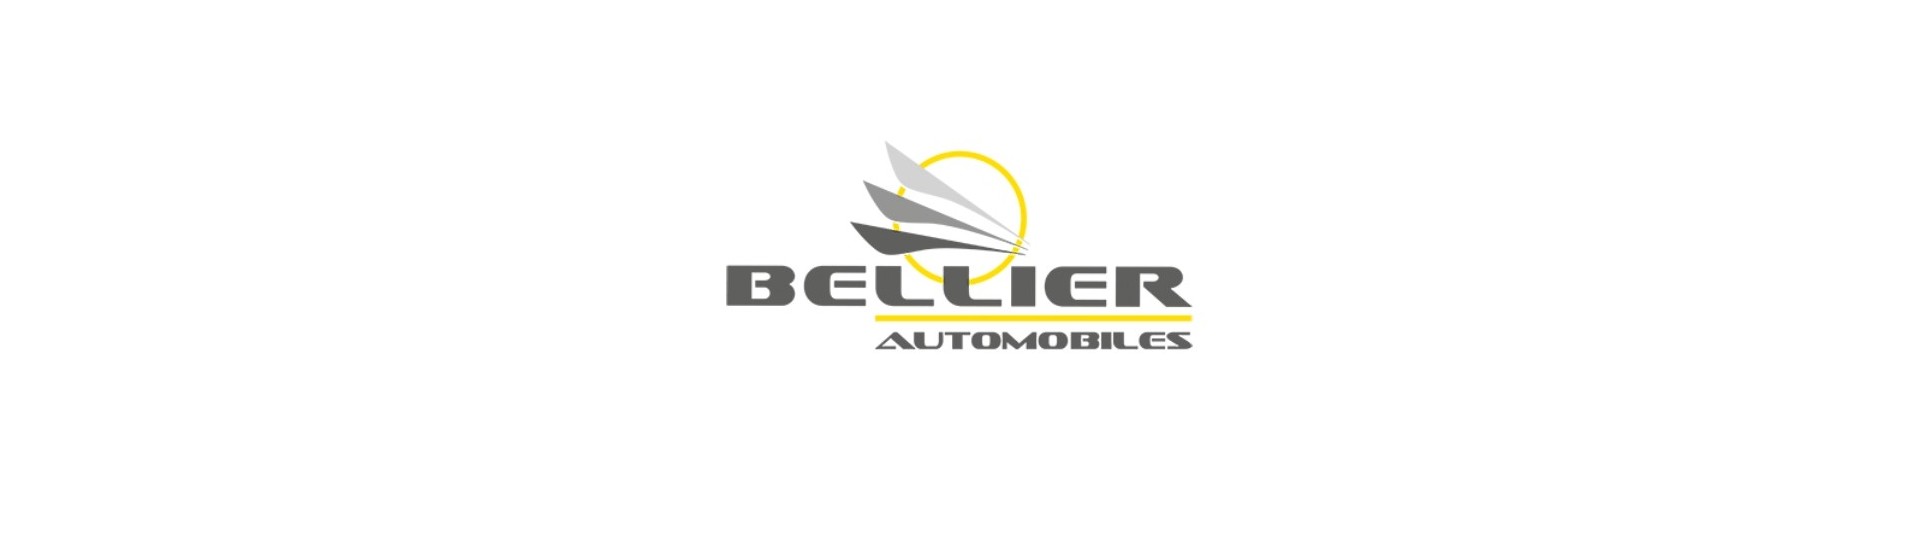 Headliner al miglior prezzo per un'auto senza patente Bellier